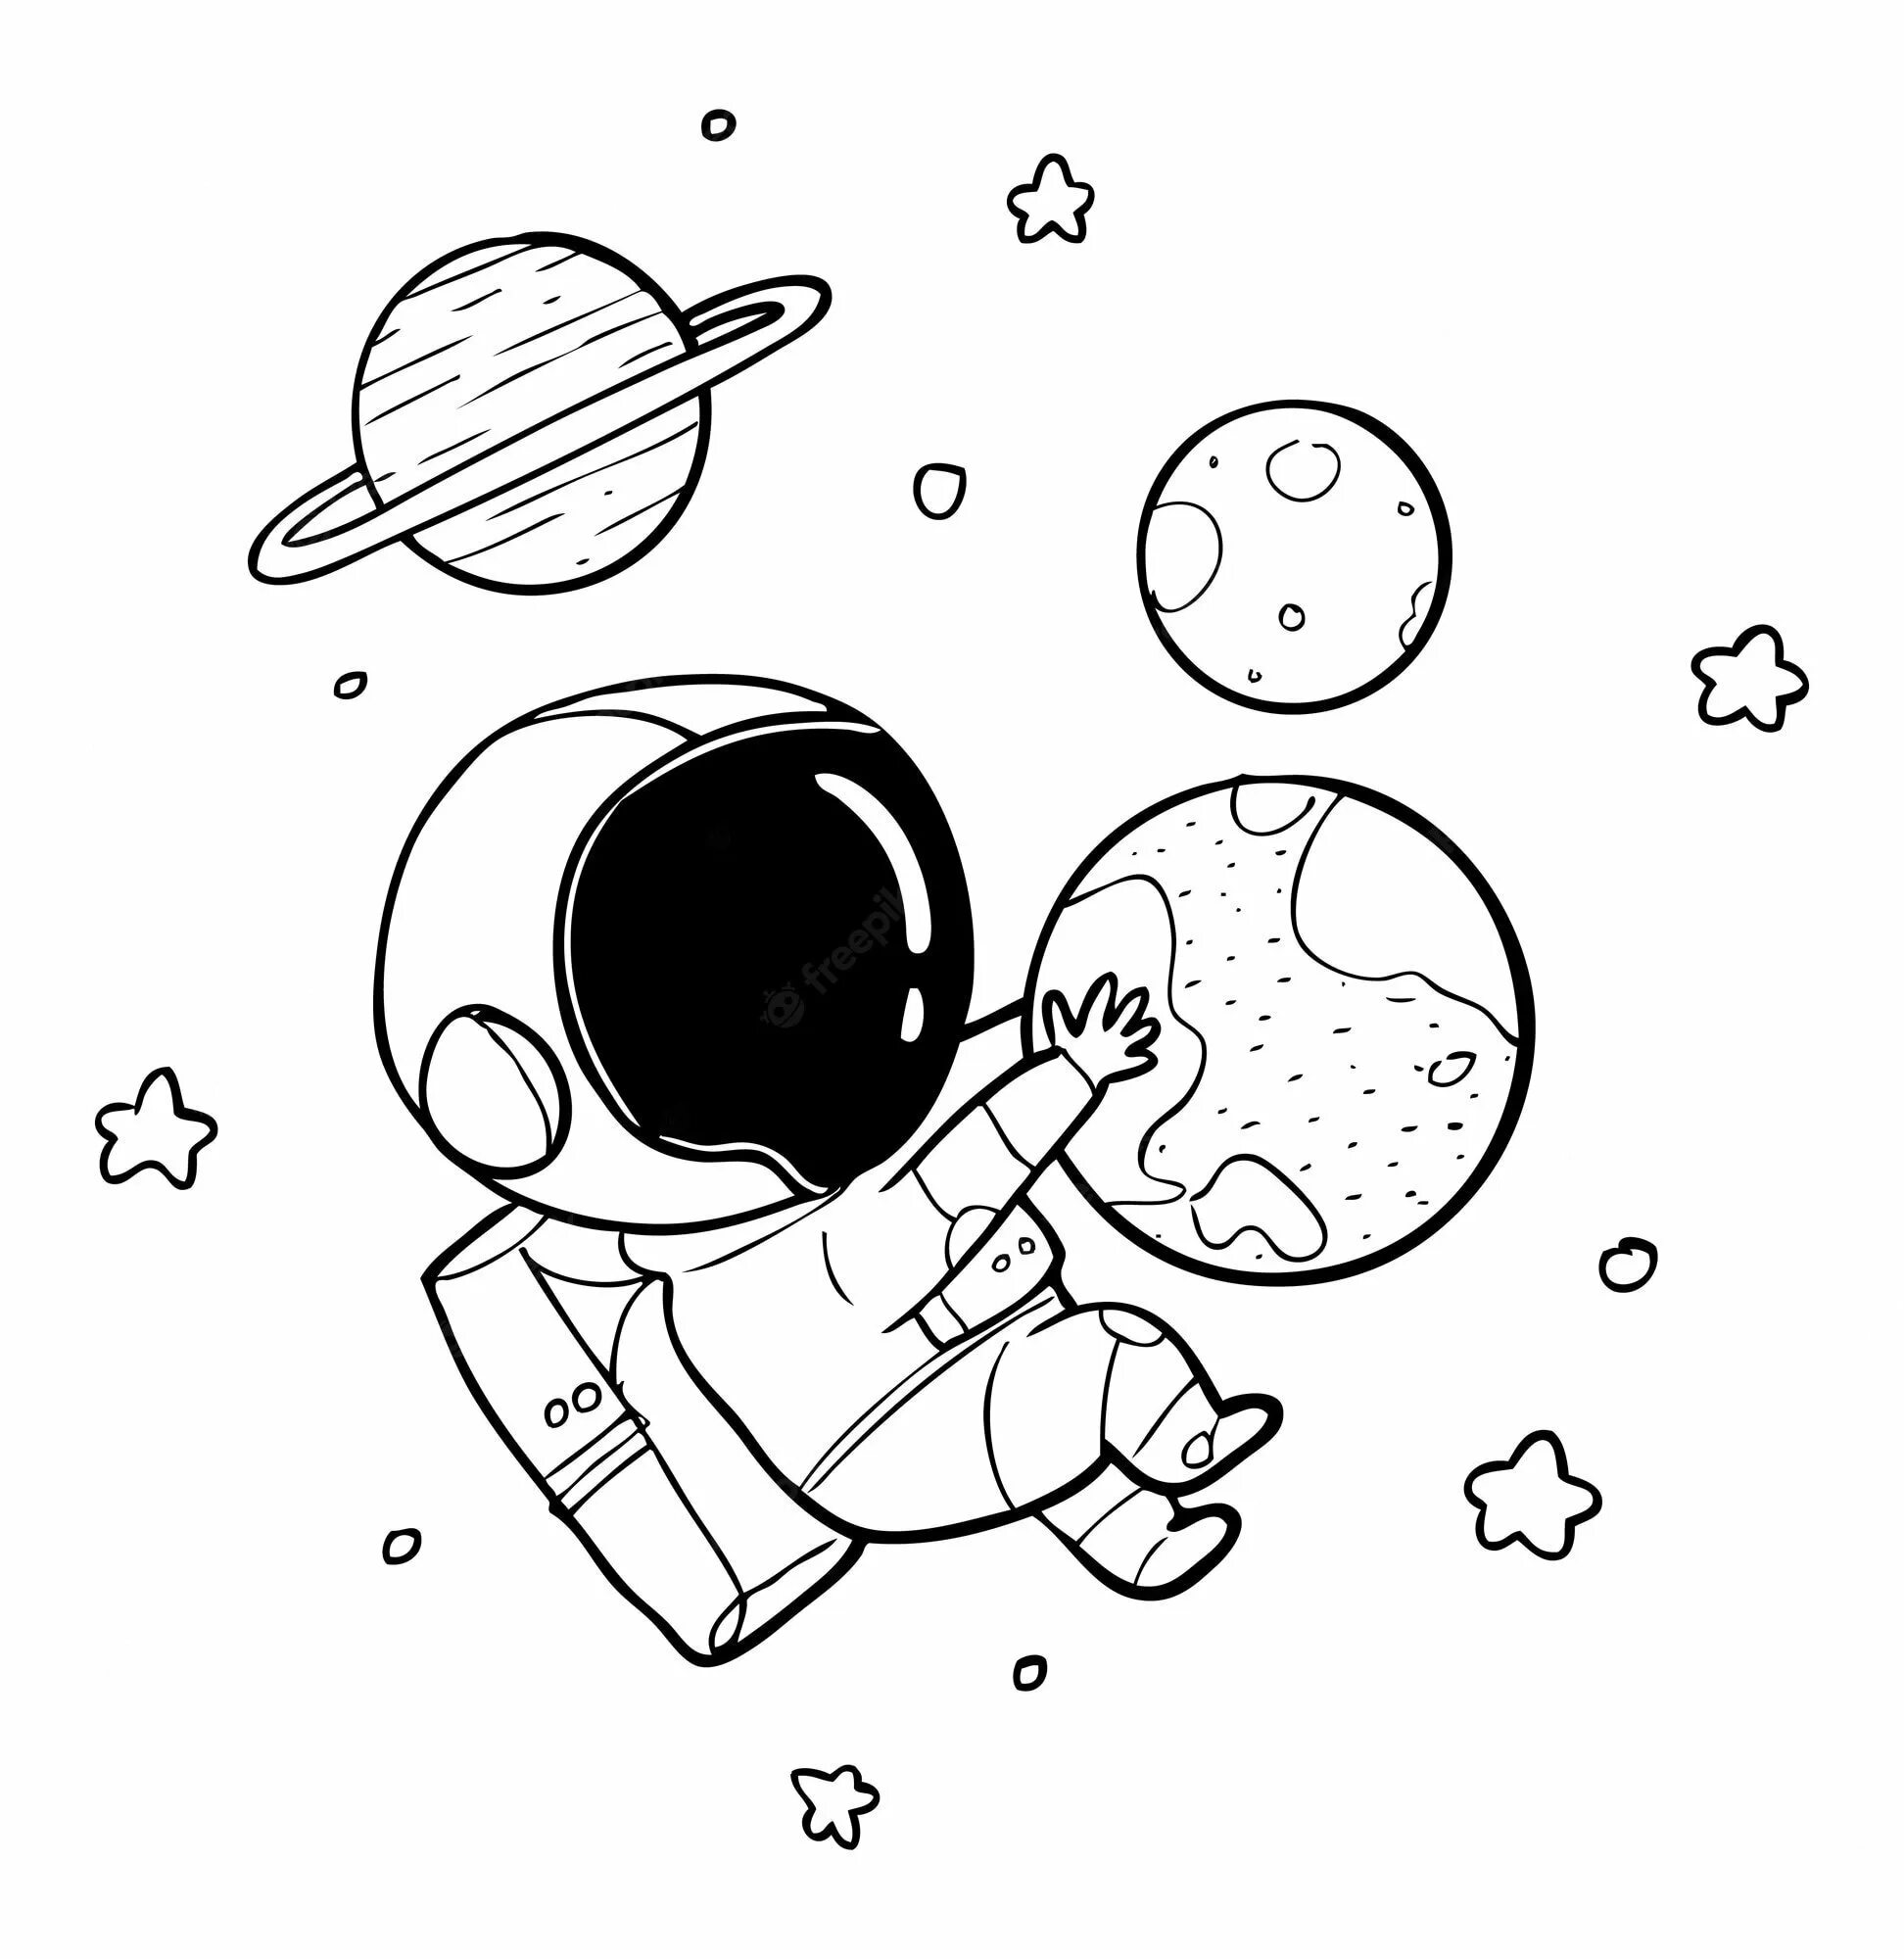 Рисунок на тему космос карандашом. Раскраска. В космосе. Космонавт раскраска. Космос раскраска для детей. Космос рисунок легкий для срисовки карандашом